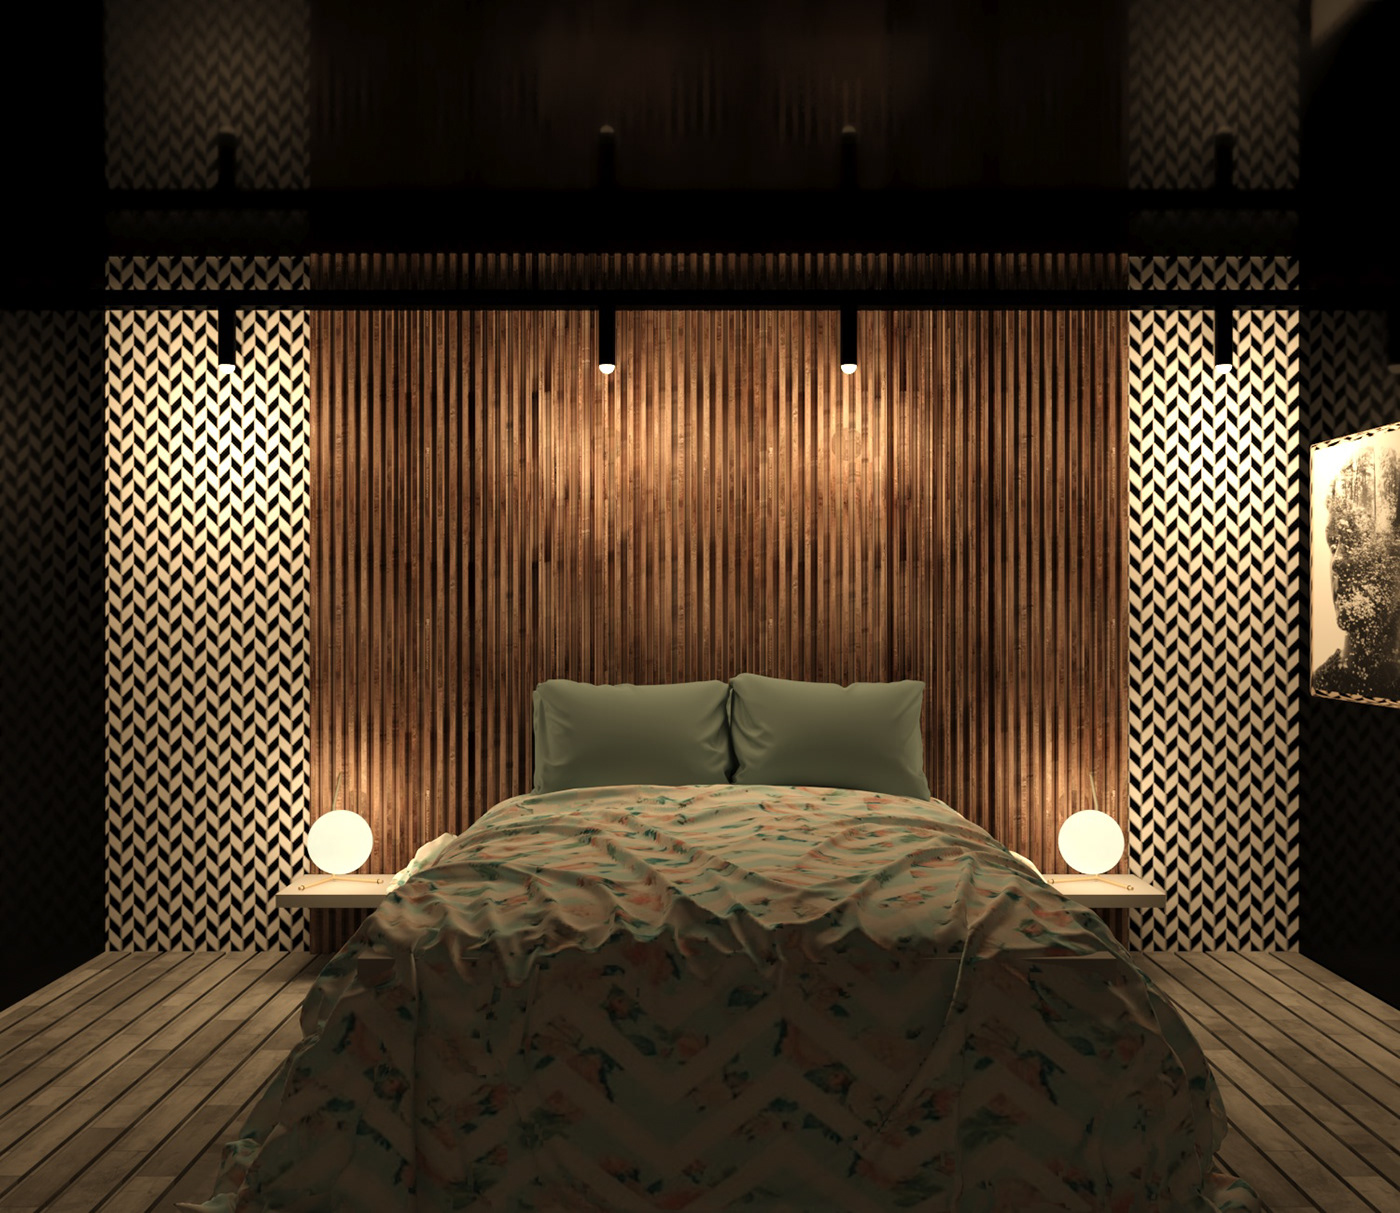 bedroomdesign design interior bedroom shot interiordesign Modern Bedroom design rendering